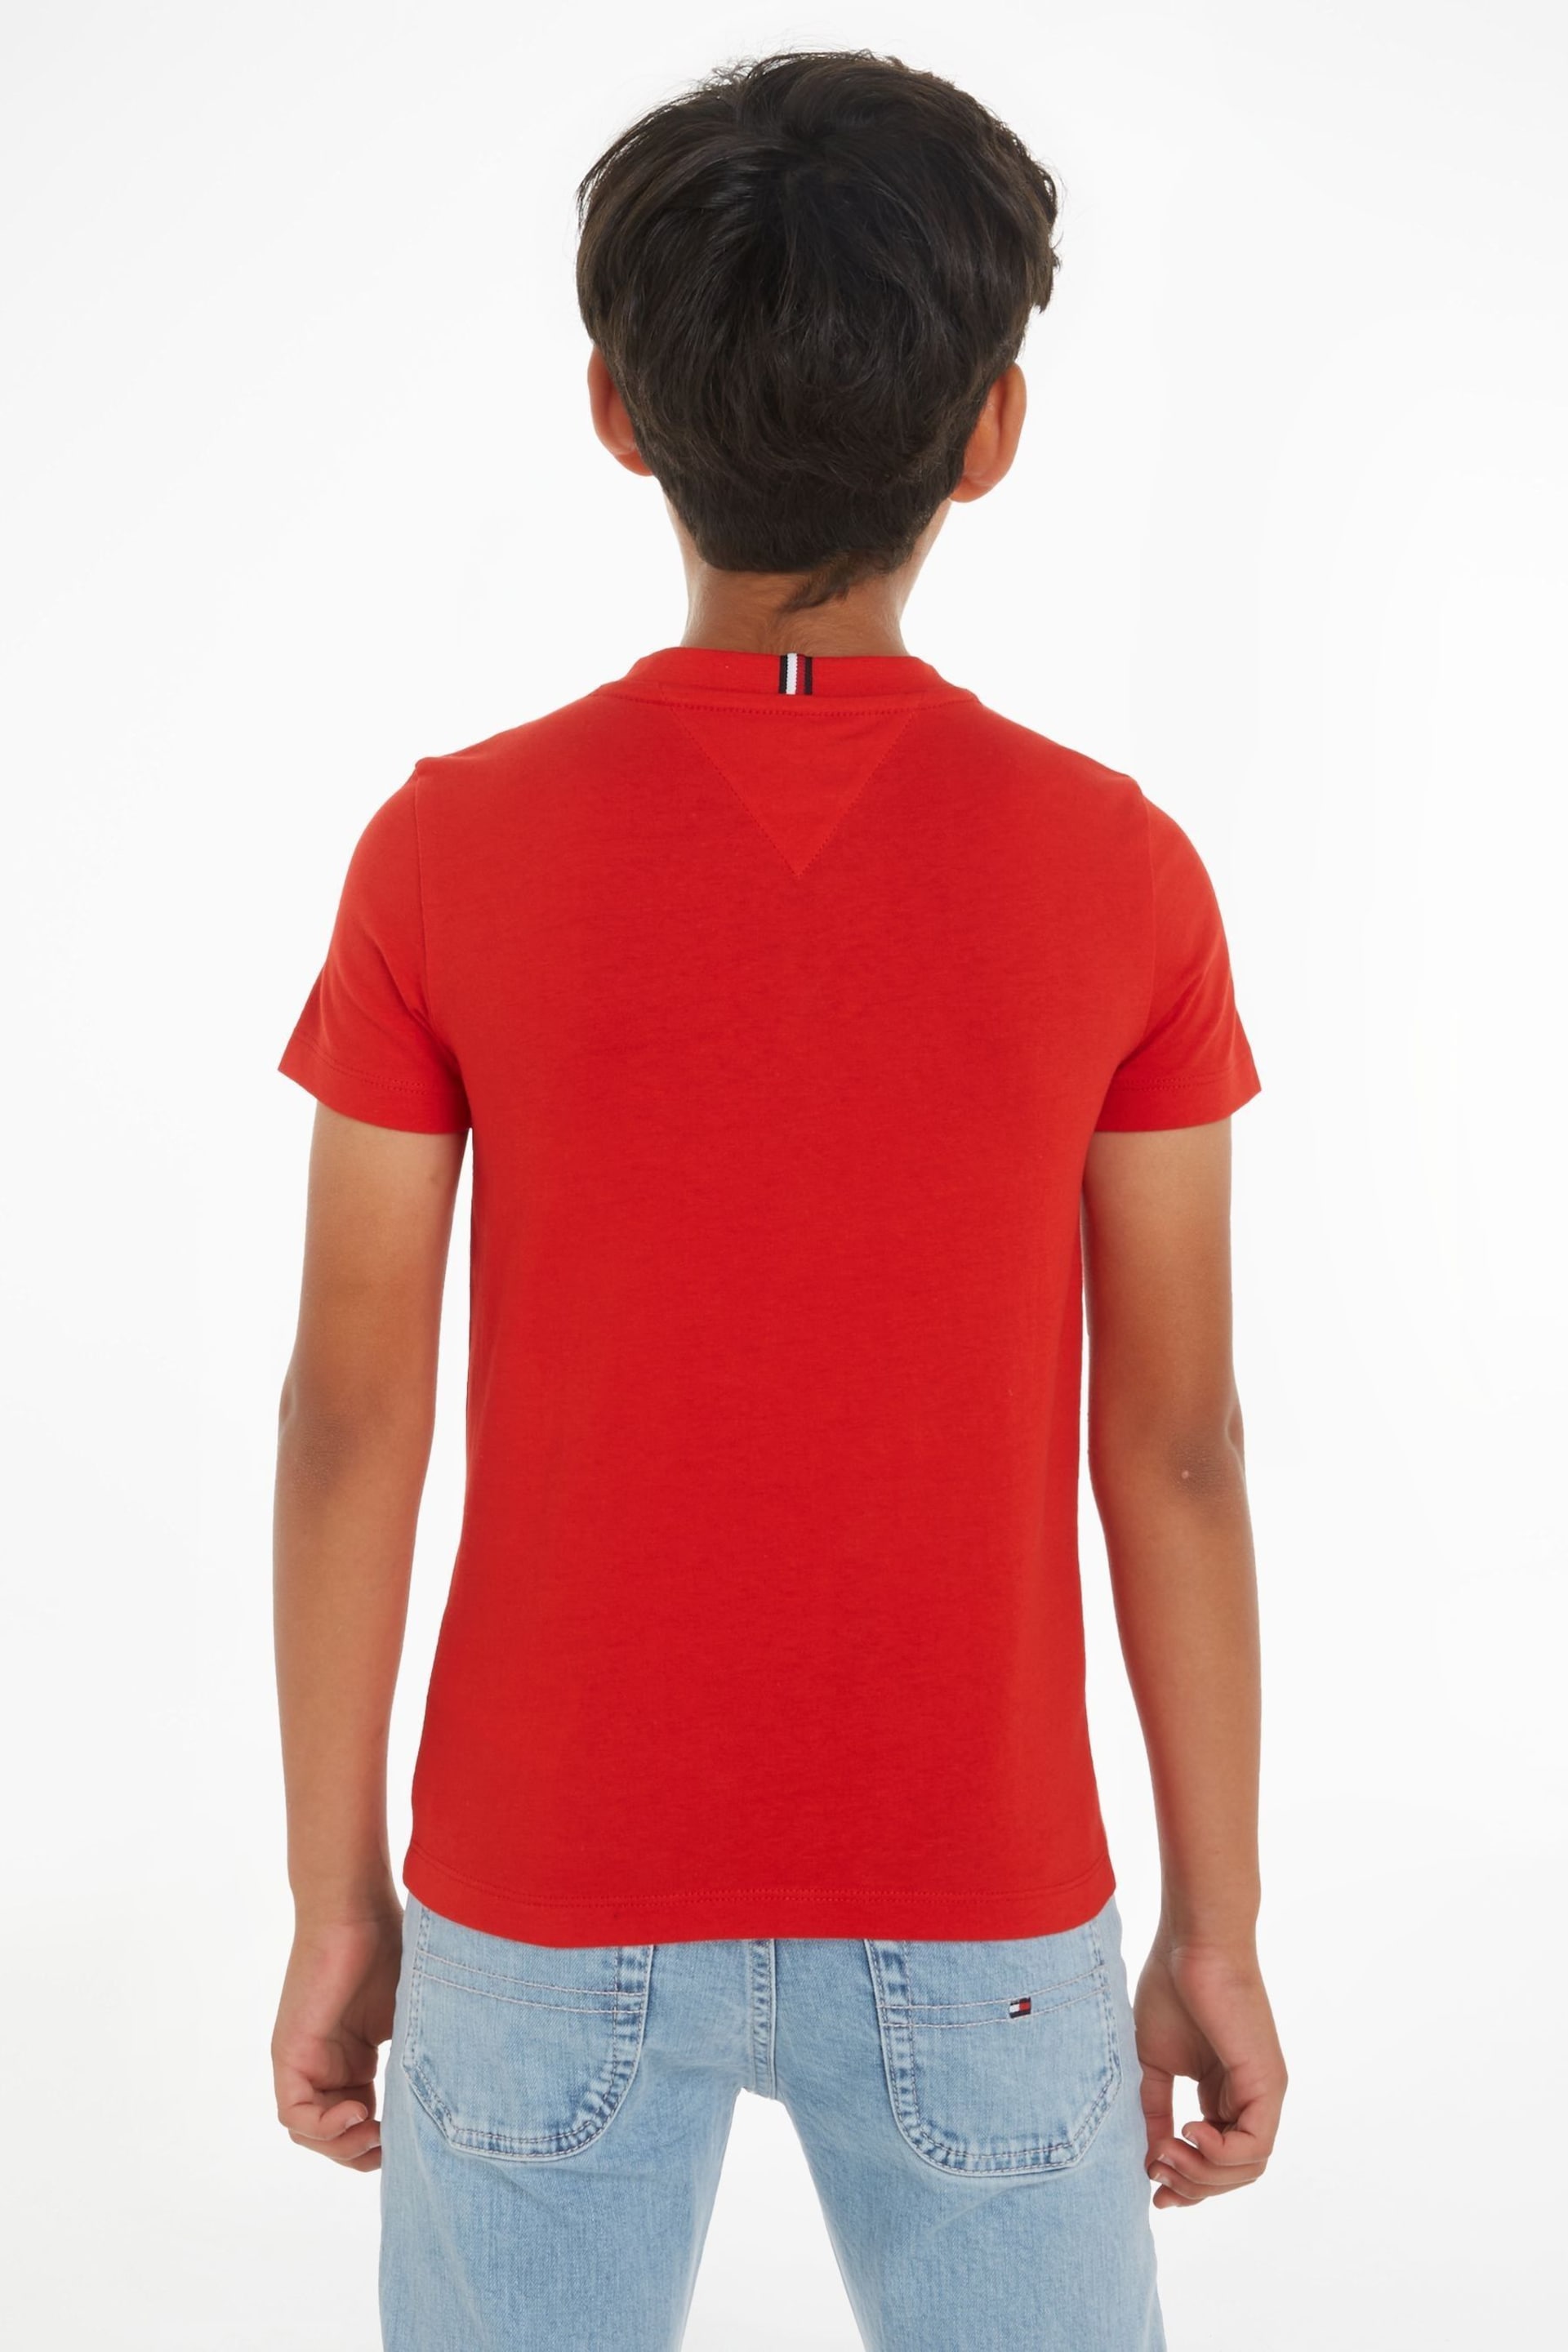 Tommy Hilfiger Hilfiger Track T-Shirt - Image 2 of 6